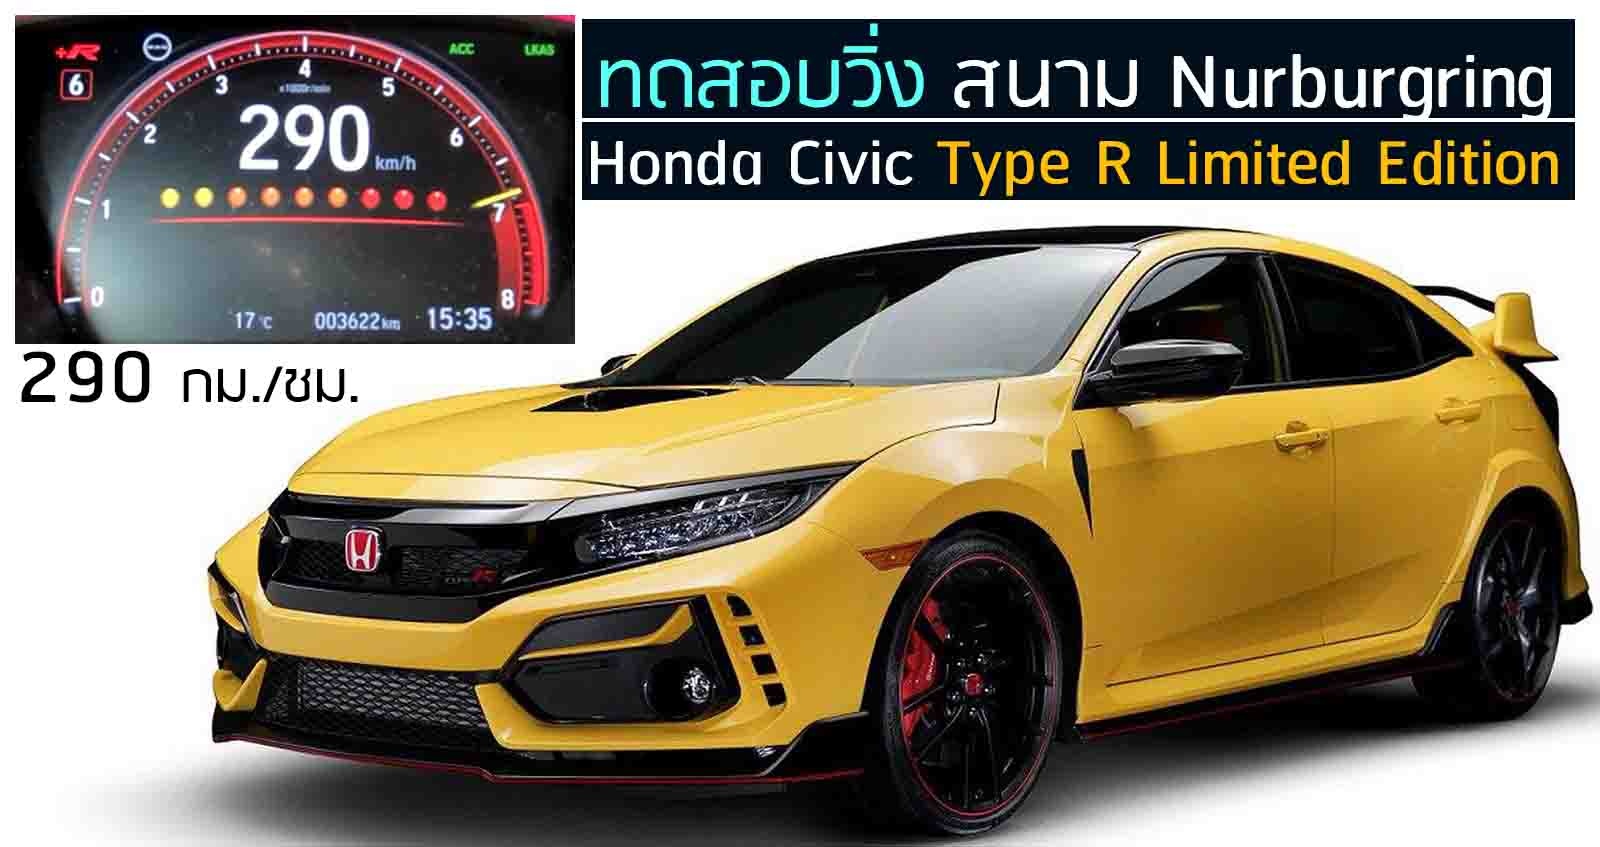 ทดดสอบวิ่ง Honda Civic Type R Limited Edition ความเร็วสูงสุ 290 กม./ชม.  บนสนาม Nurburgring